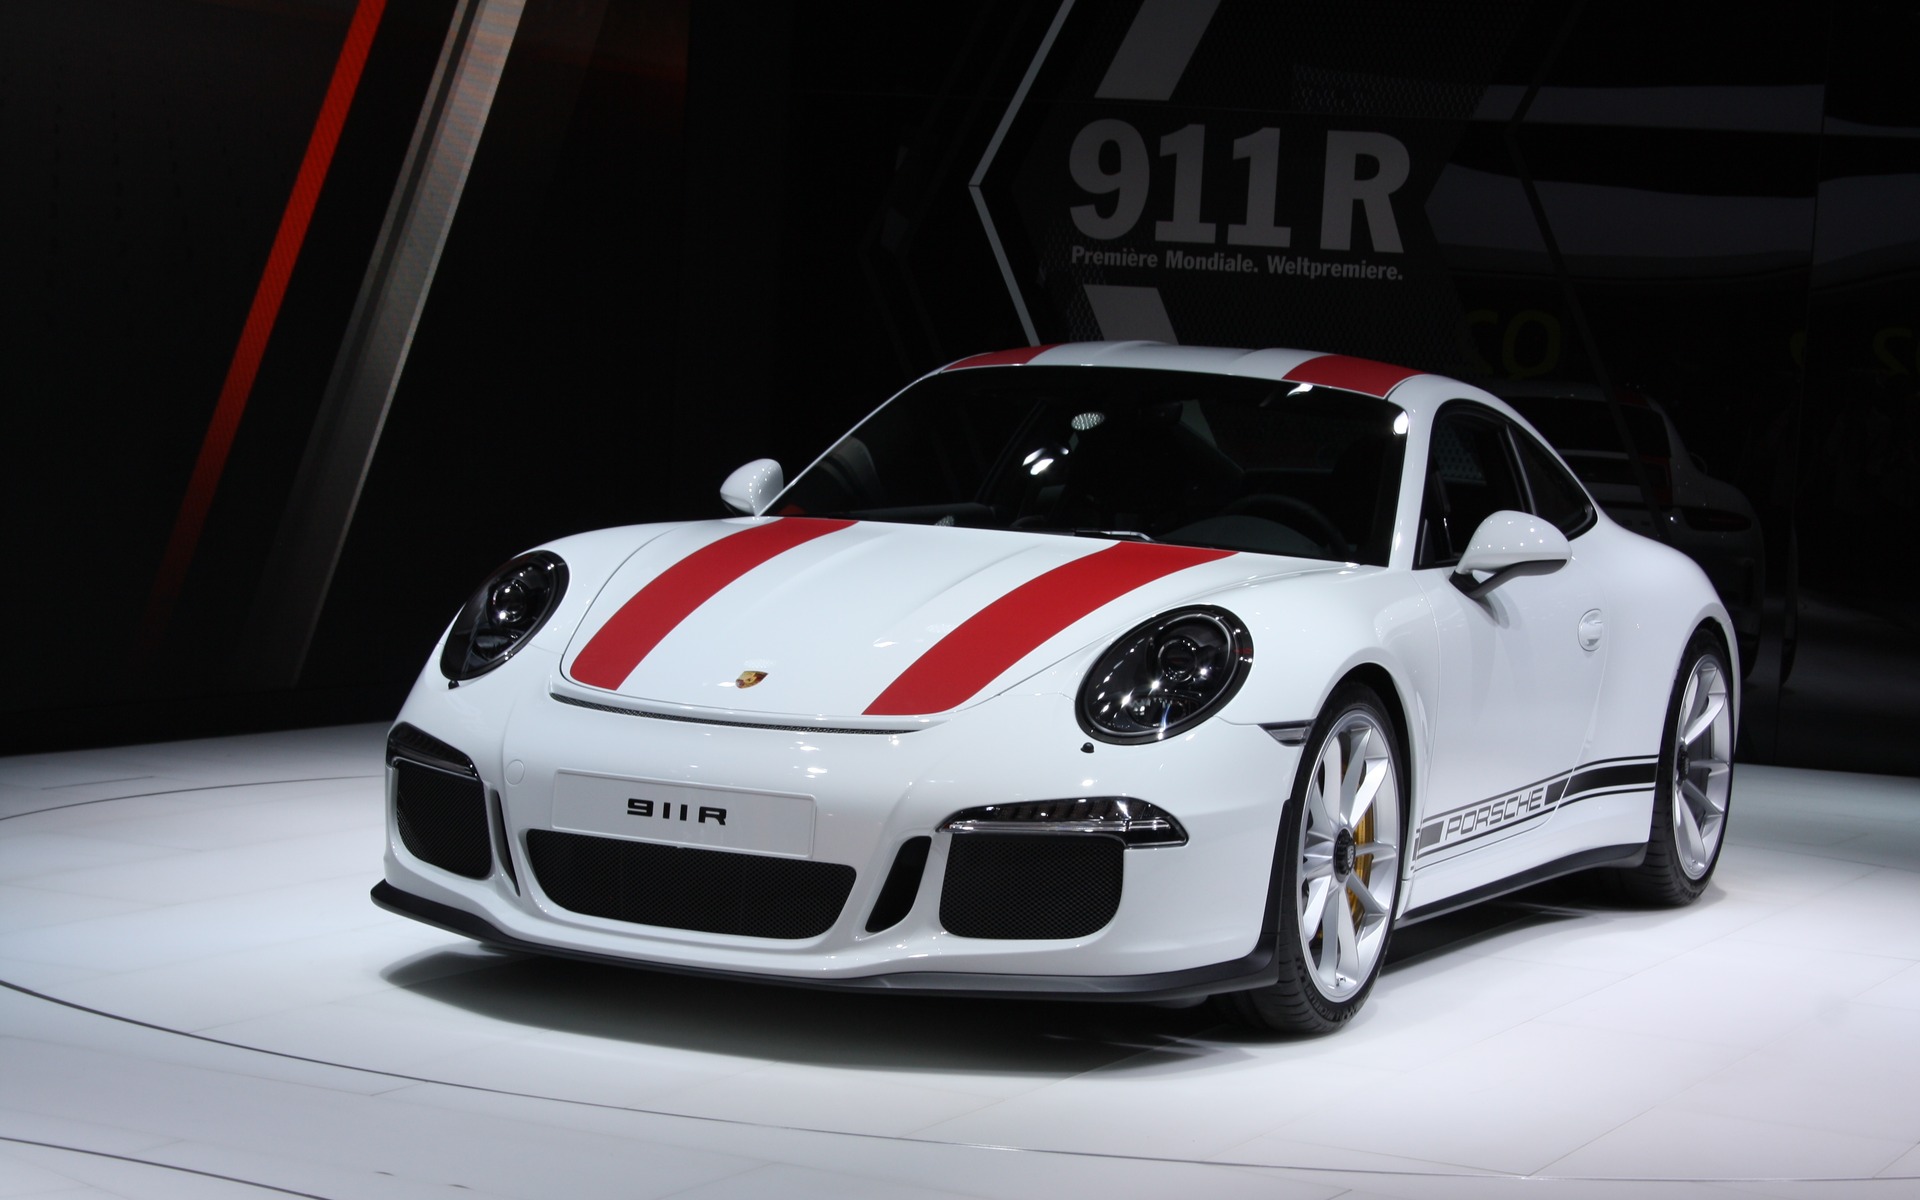 2: Porsche 911 R